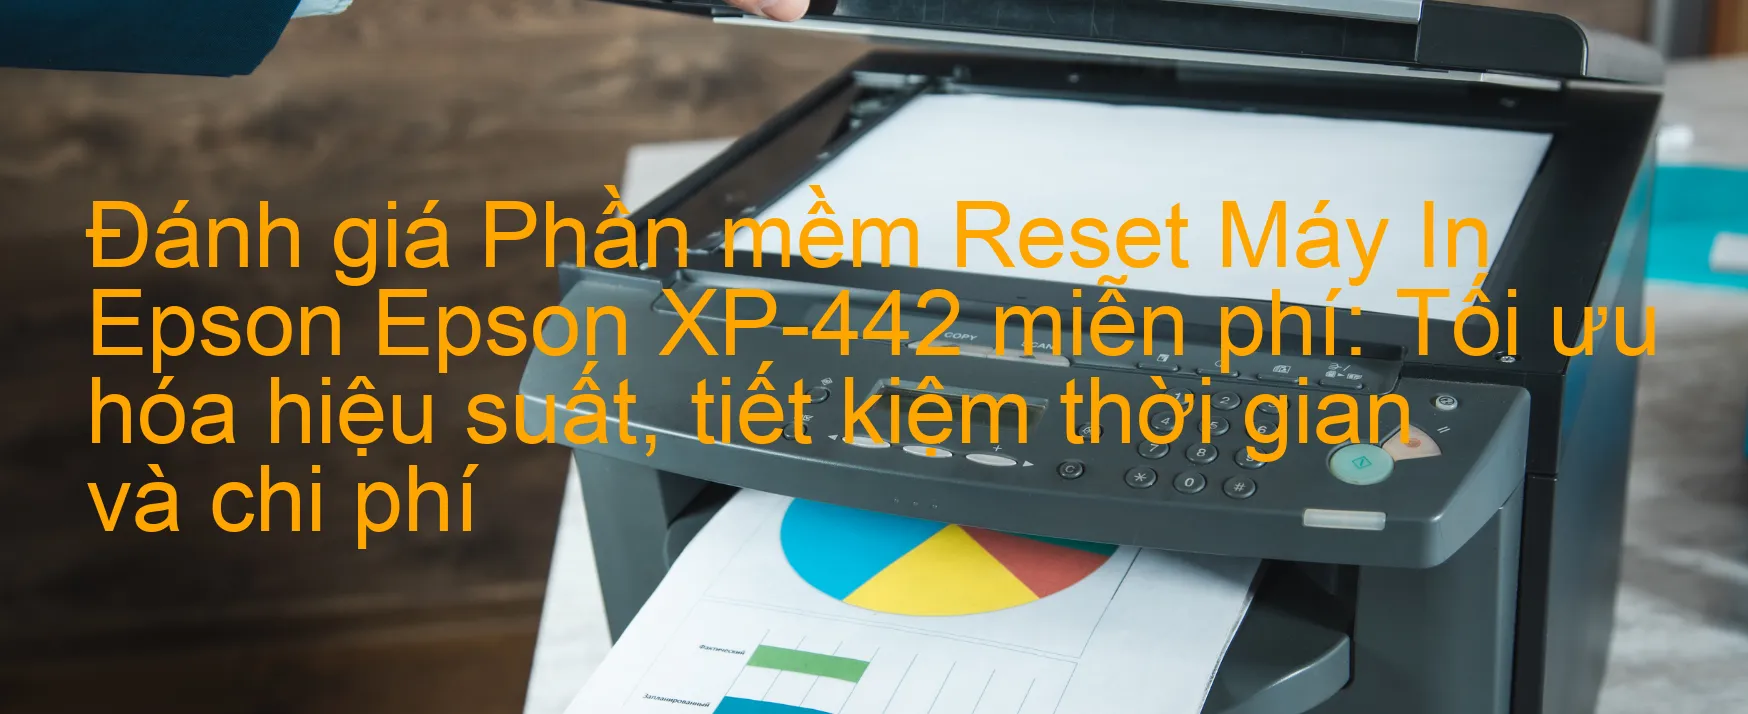 Đánh Giá phần mềm Reset Epson XP-442 Miễn Phí